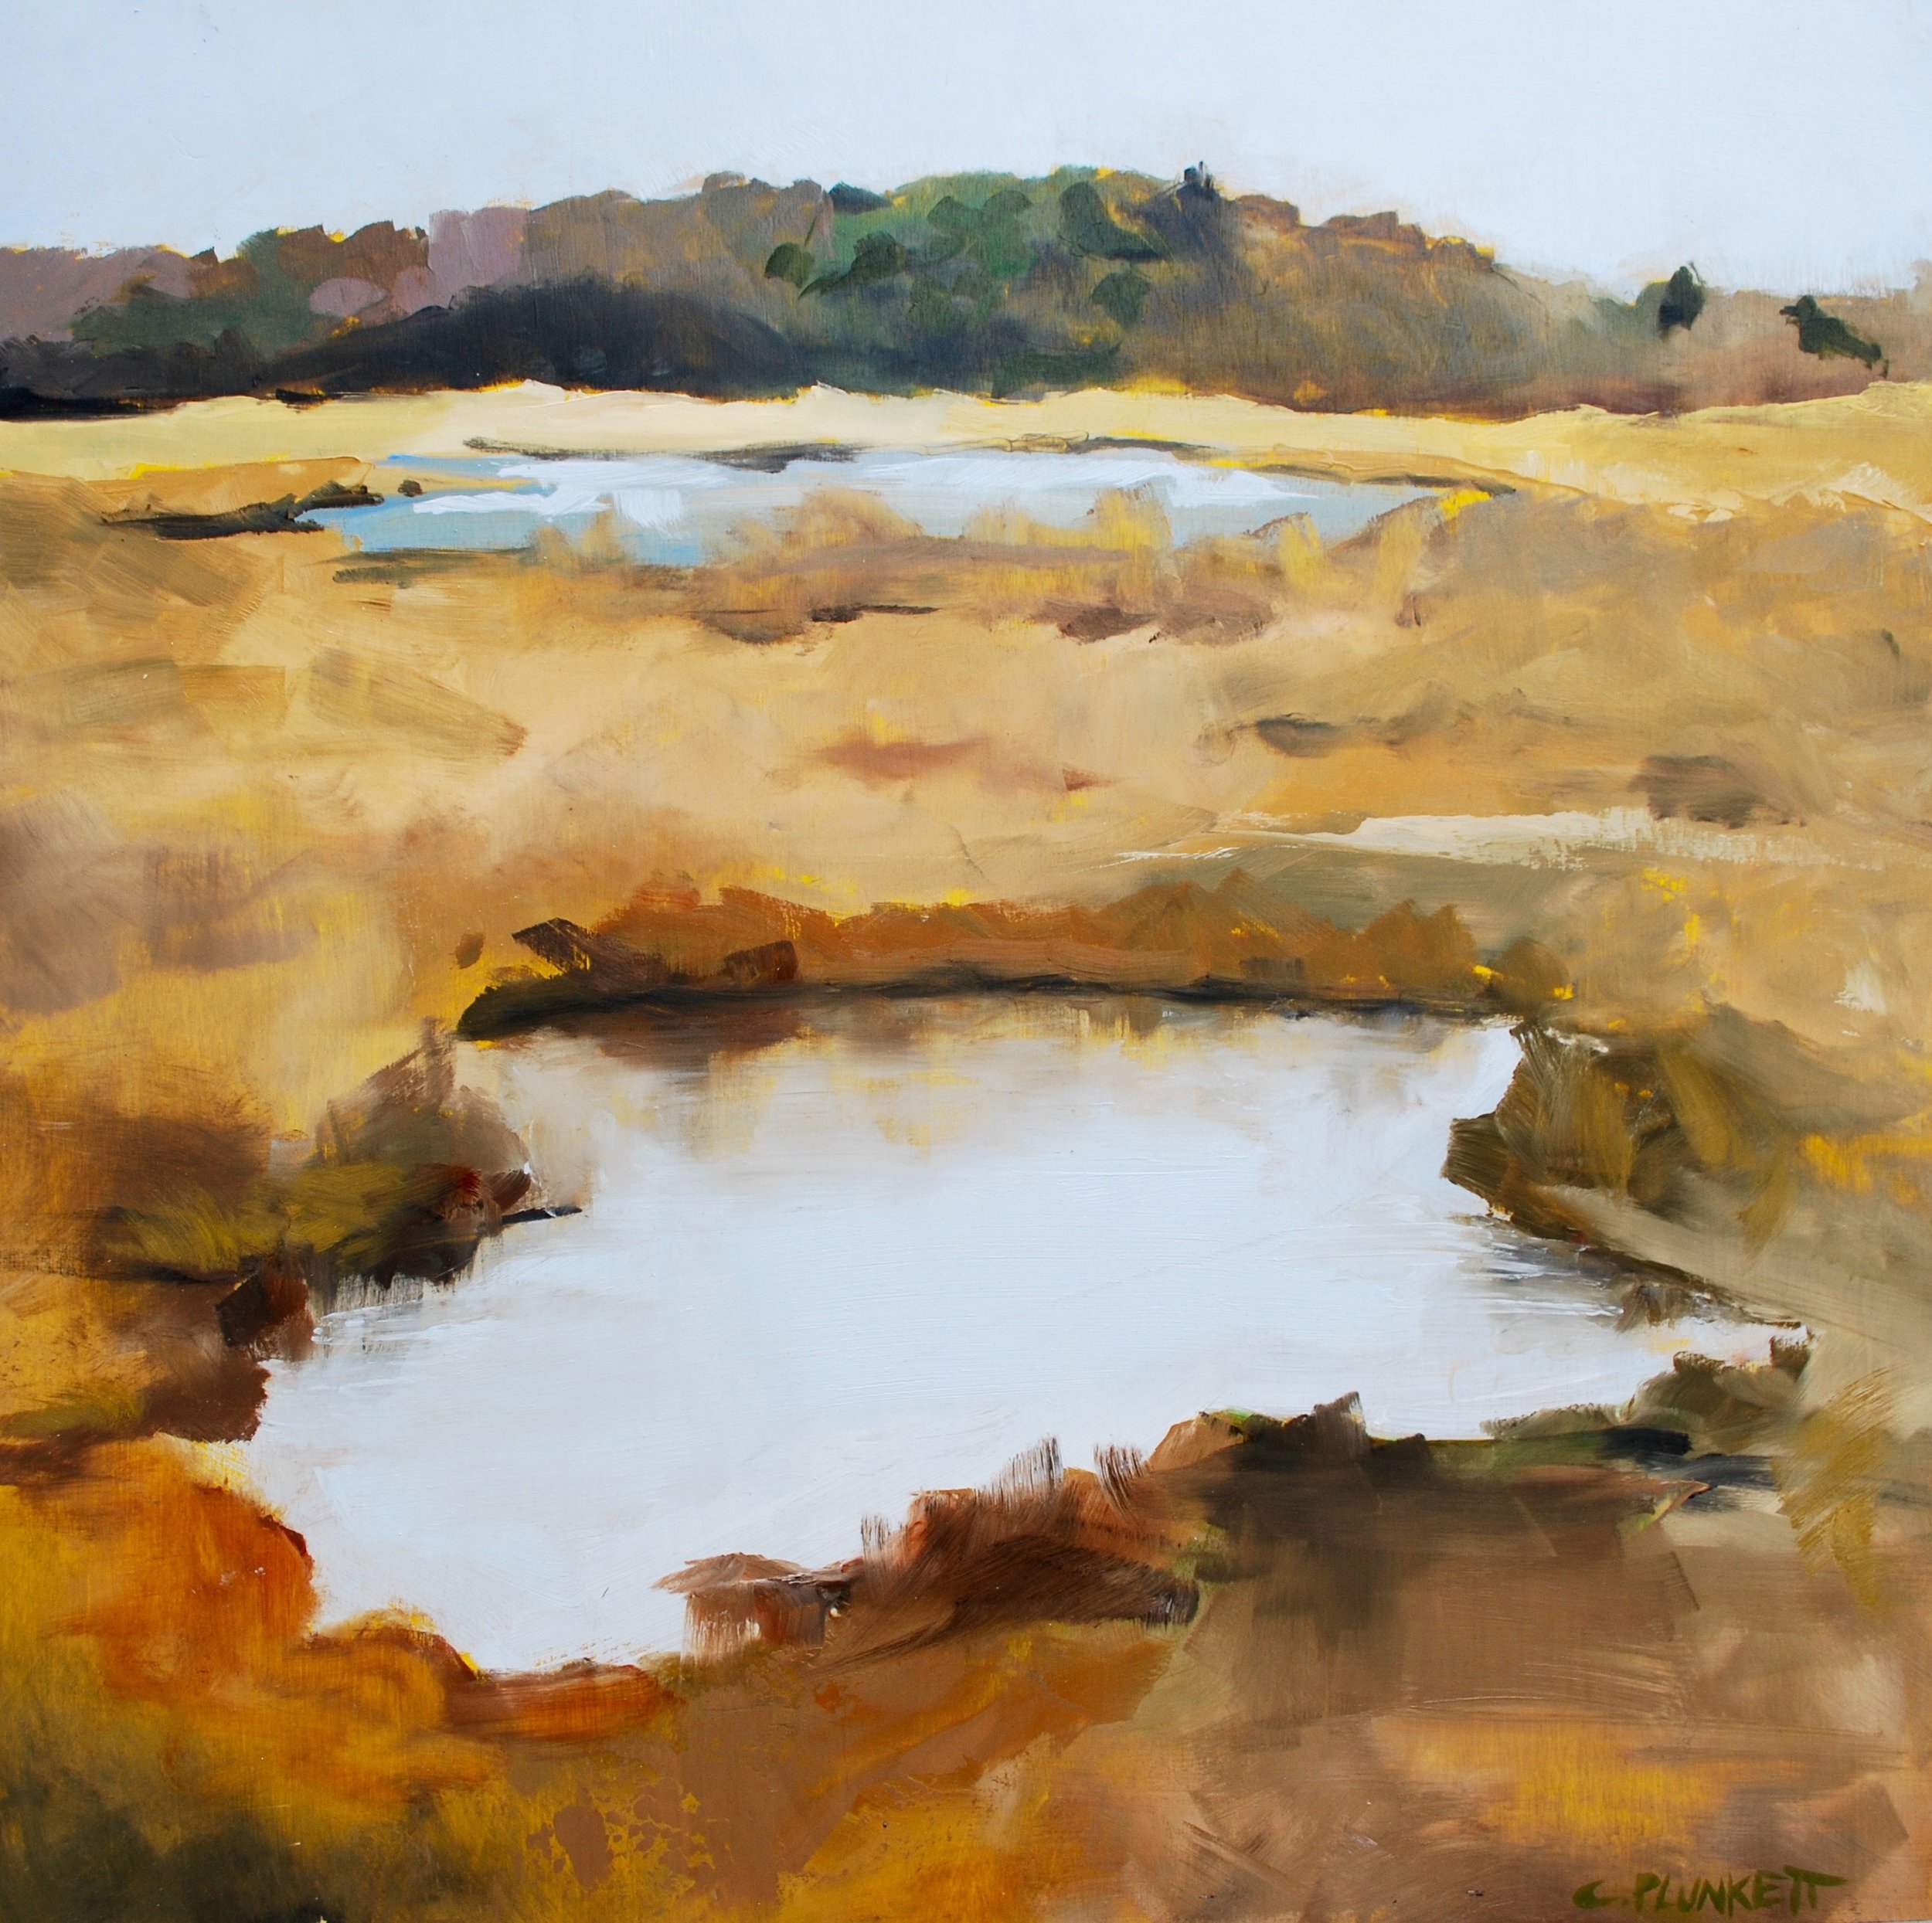  Chris Plulnkett,  Neponset River #3 , Oil on wood panel, 24x24 